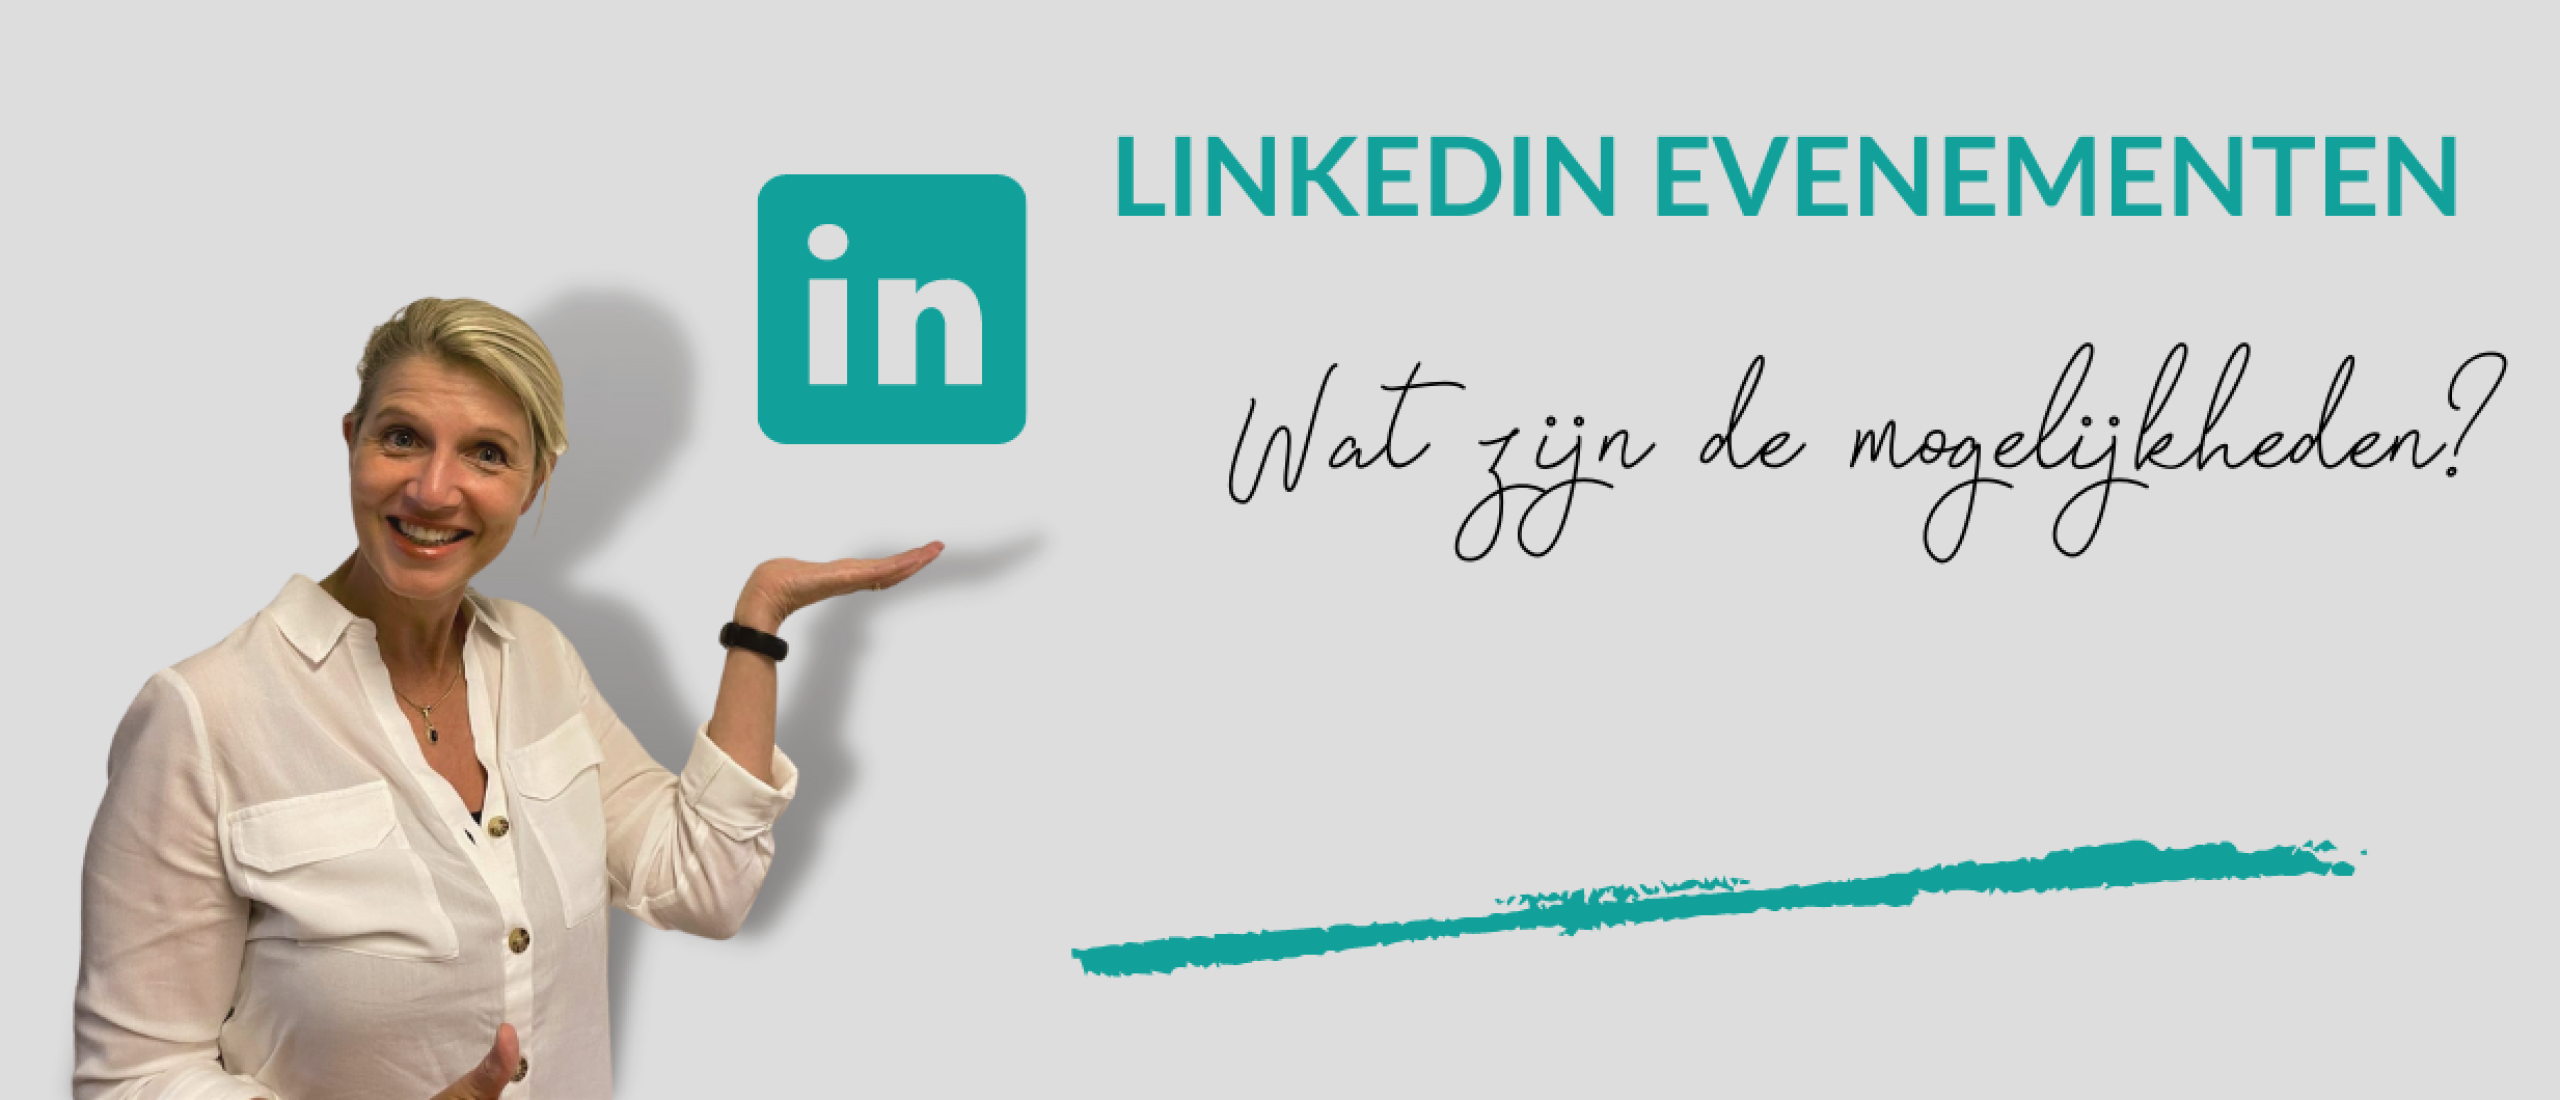 LinkedIn evenementen: de mogelijkheden